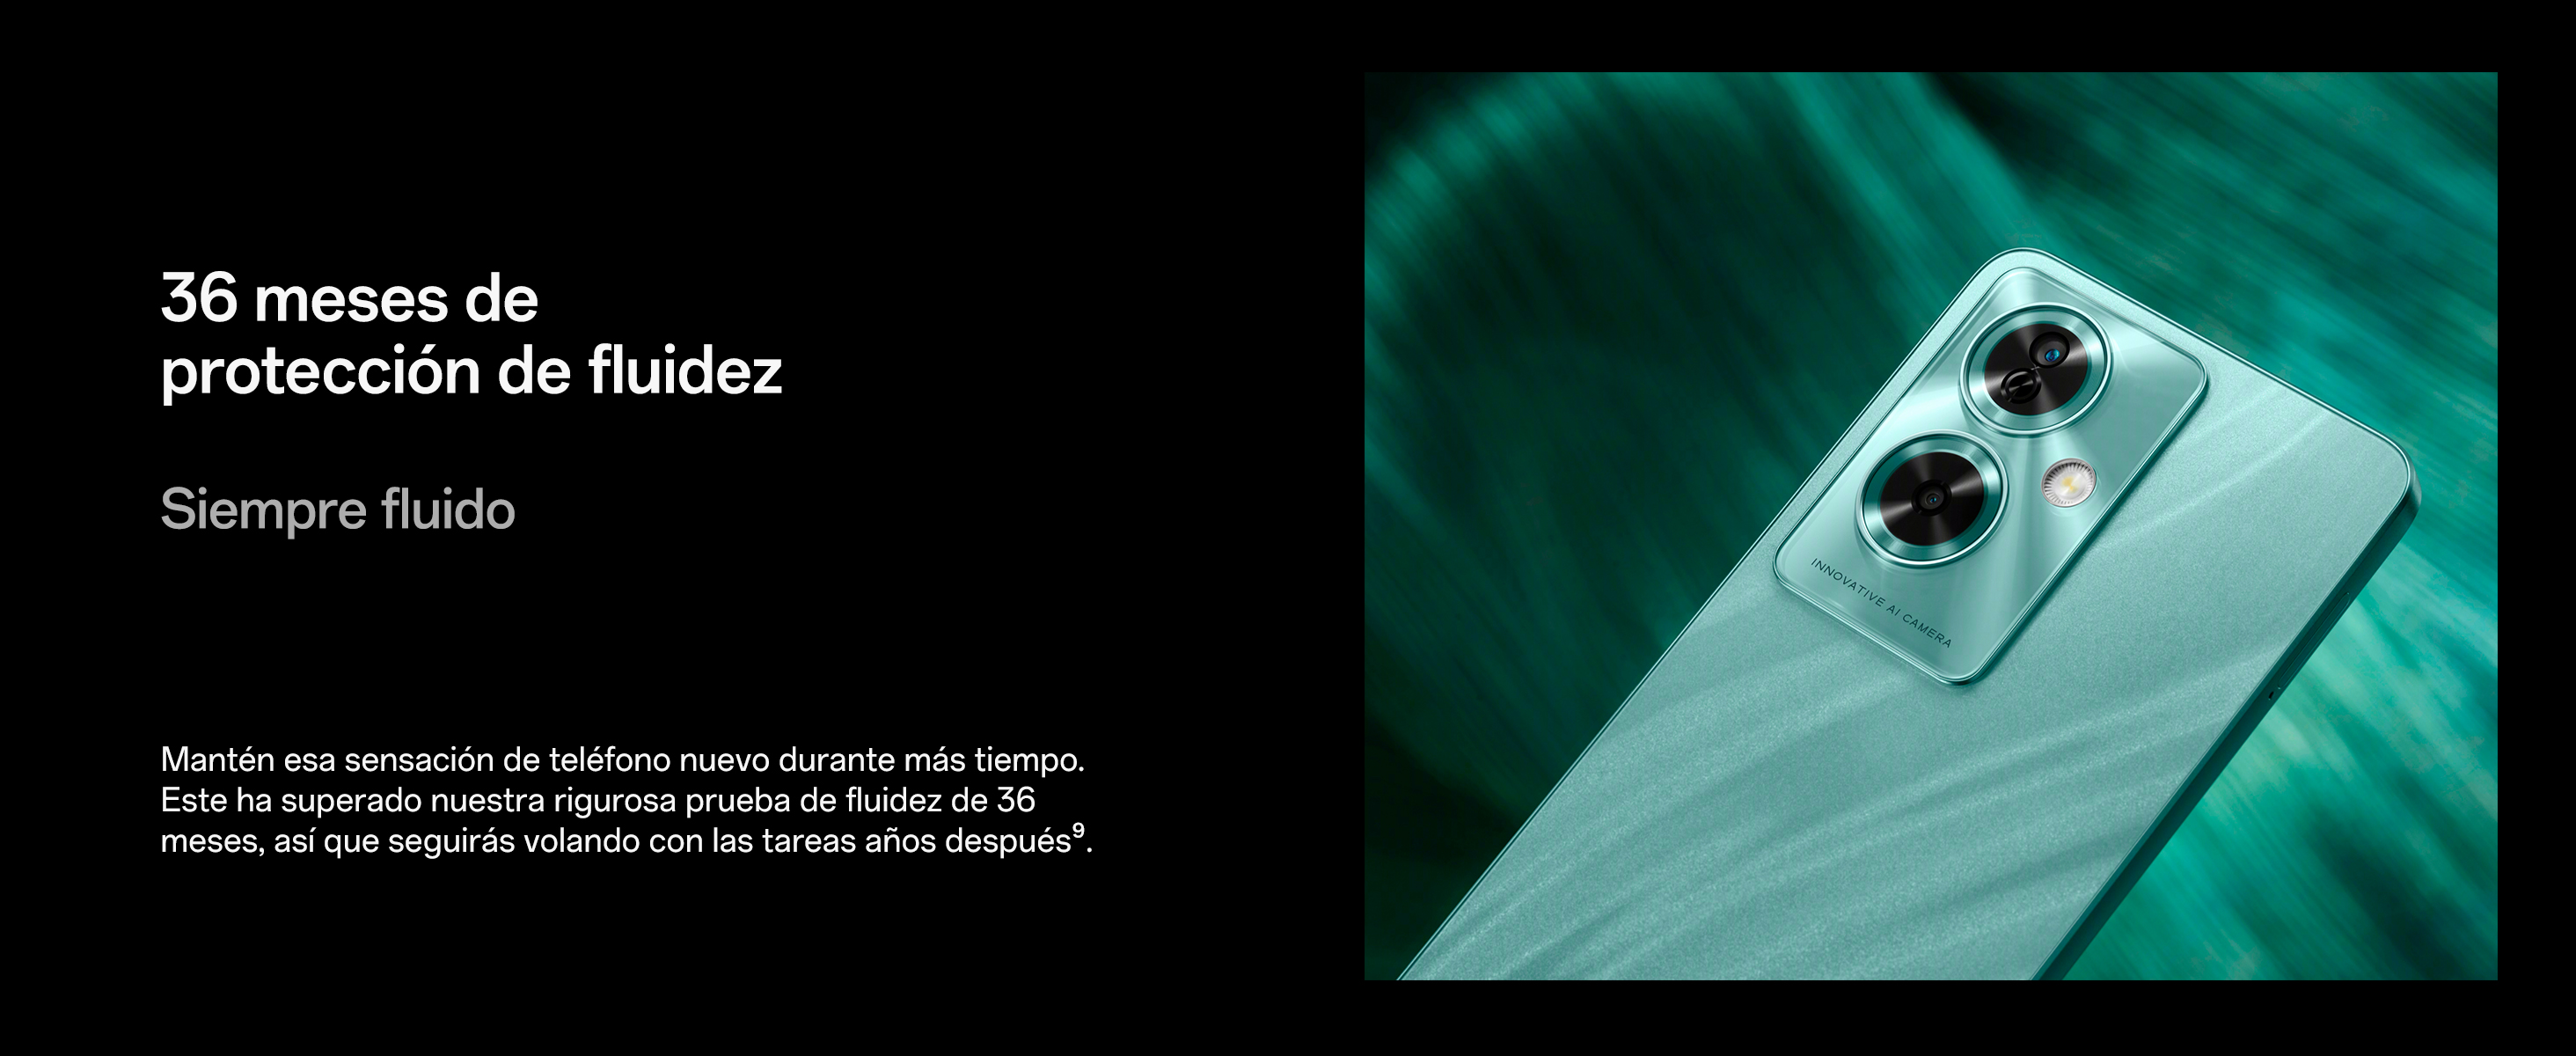 Comprar Oppo A79 5G negro 128 GB - Movistar